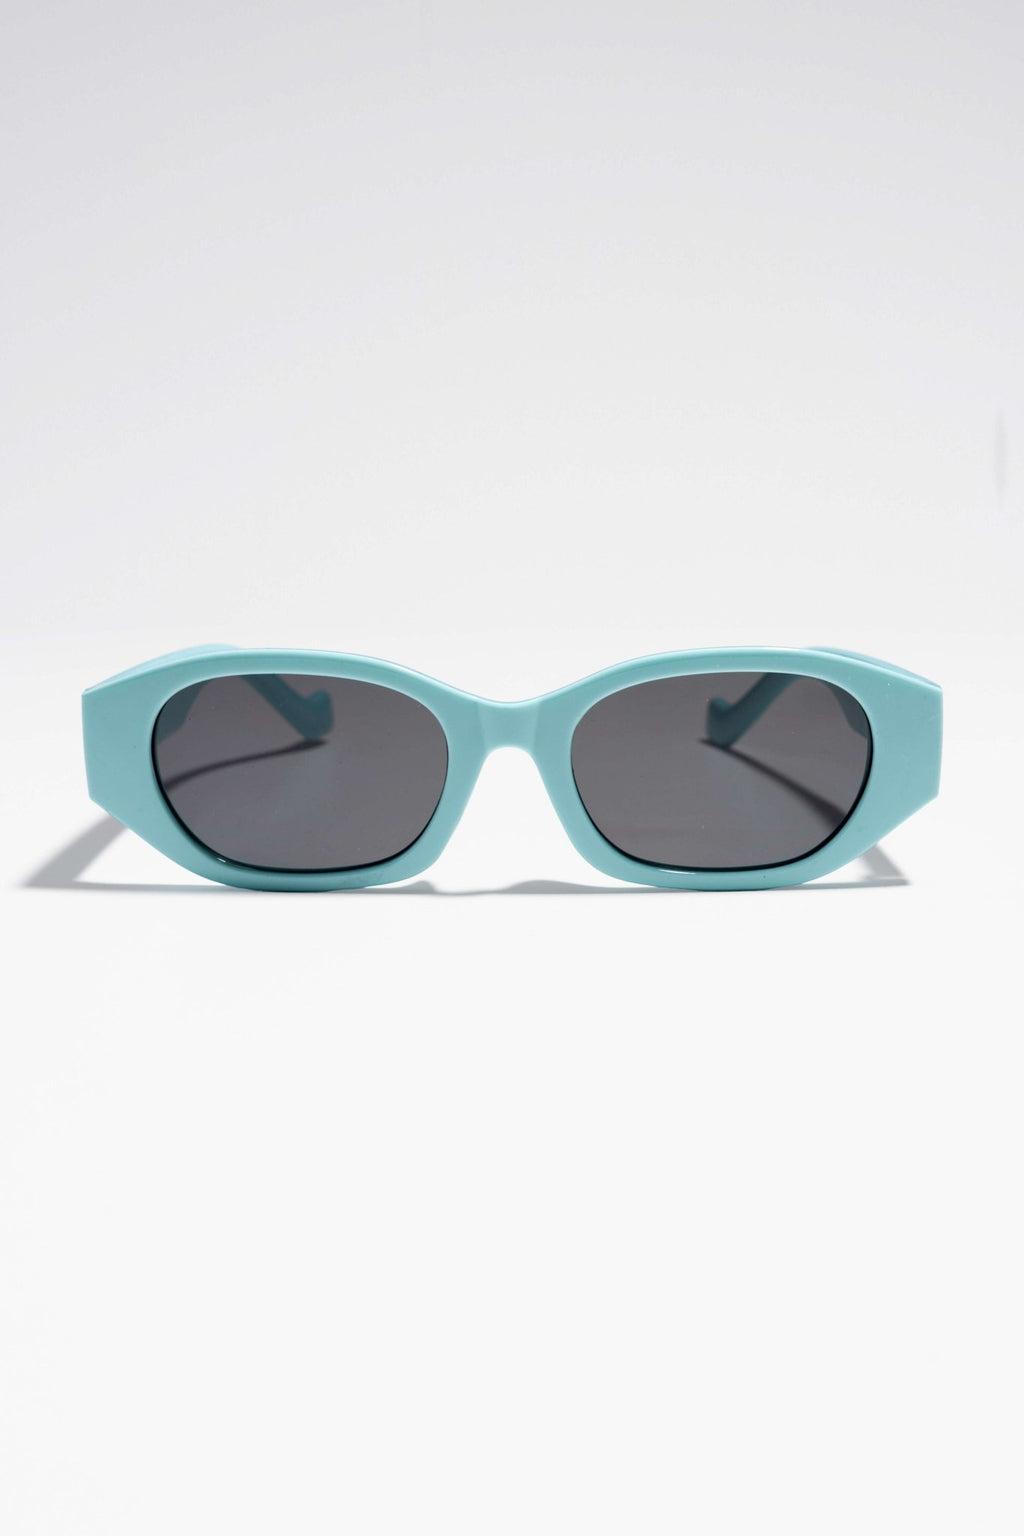 Slnečné okuliare Nicola - modrá/čierna